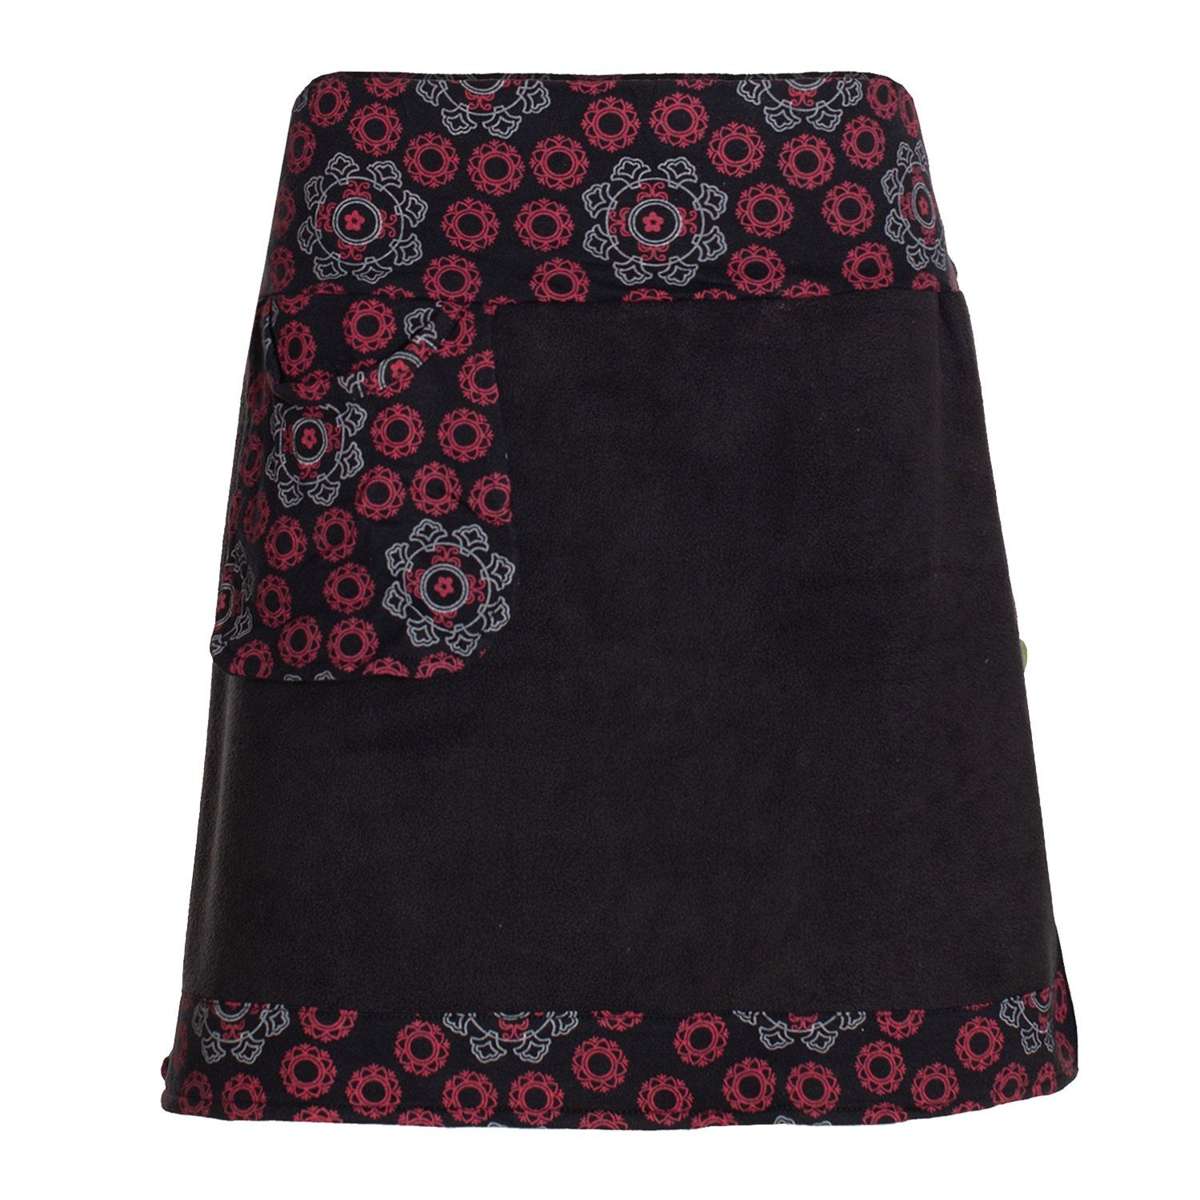 Мини-юбка, термоюбка, теплая боковая сумка, женская зимняя юбка, короткая флисовая юбка в стиле хиппи